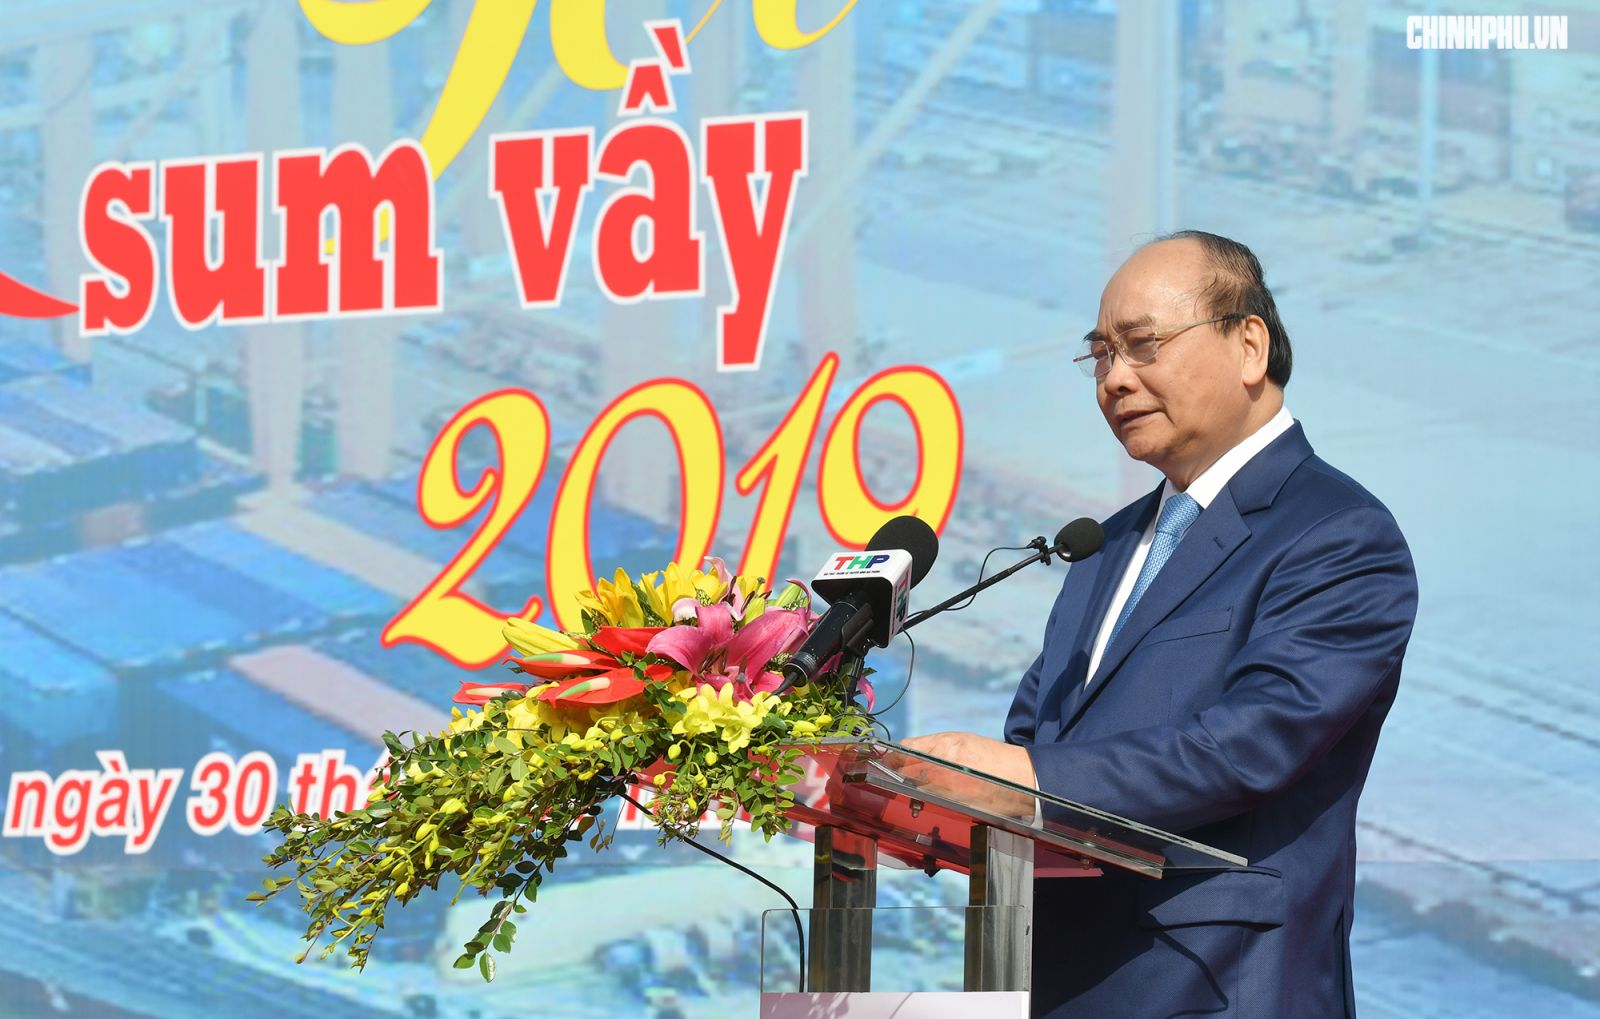 Thủ tướng Nguyễn Xuân Phúc phát biểu tại chương trình “Tết Sum vầy”. Ảnh: VGP/Quang Hiếu